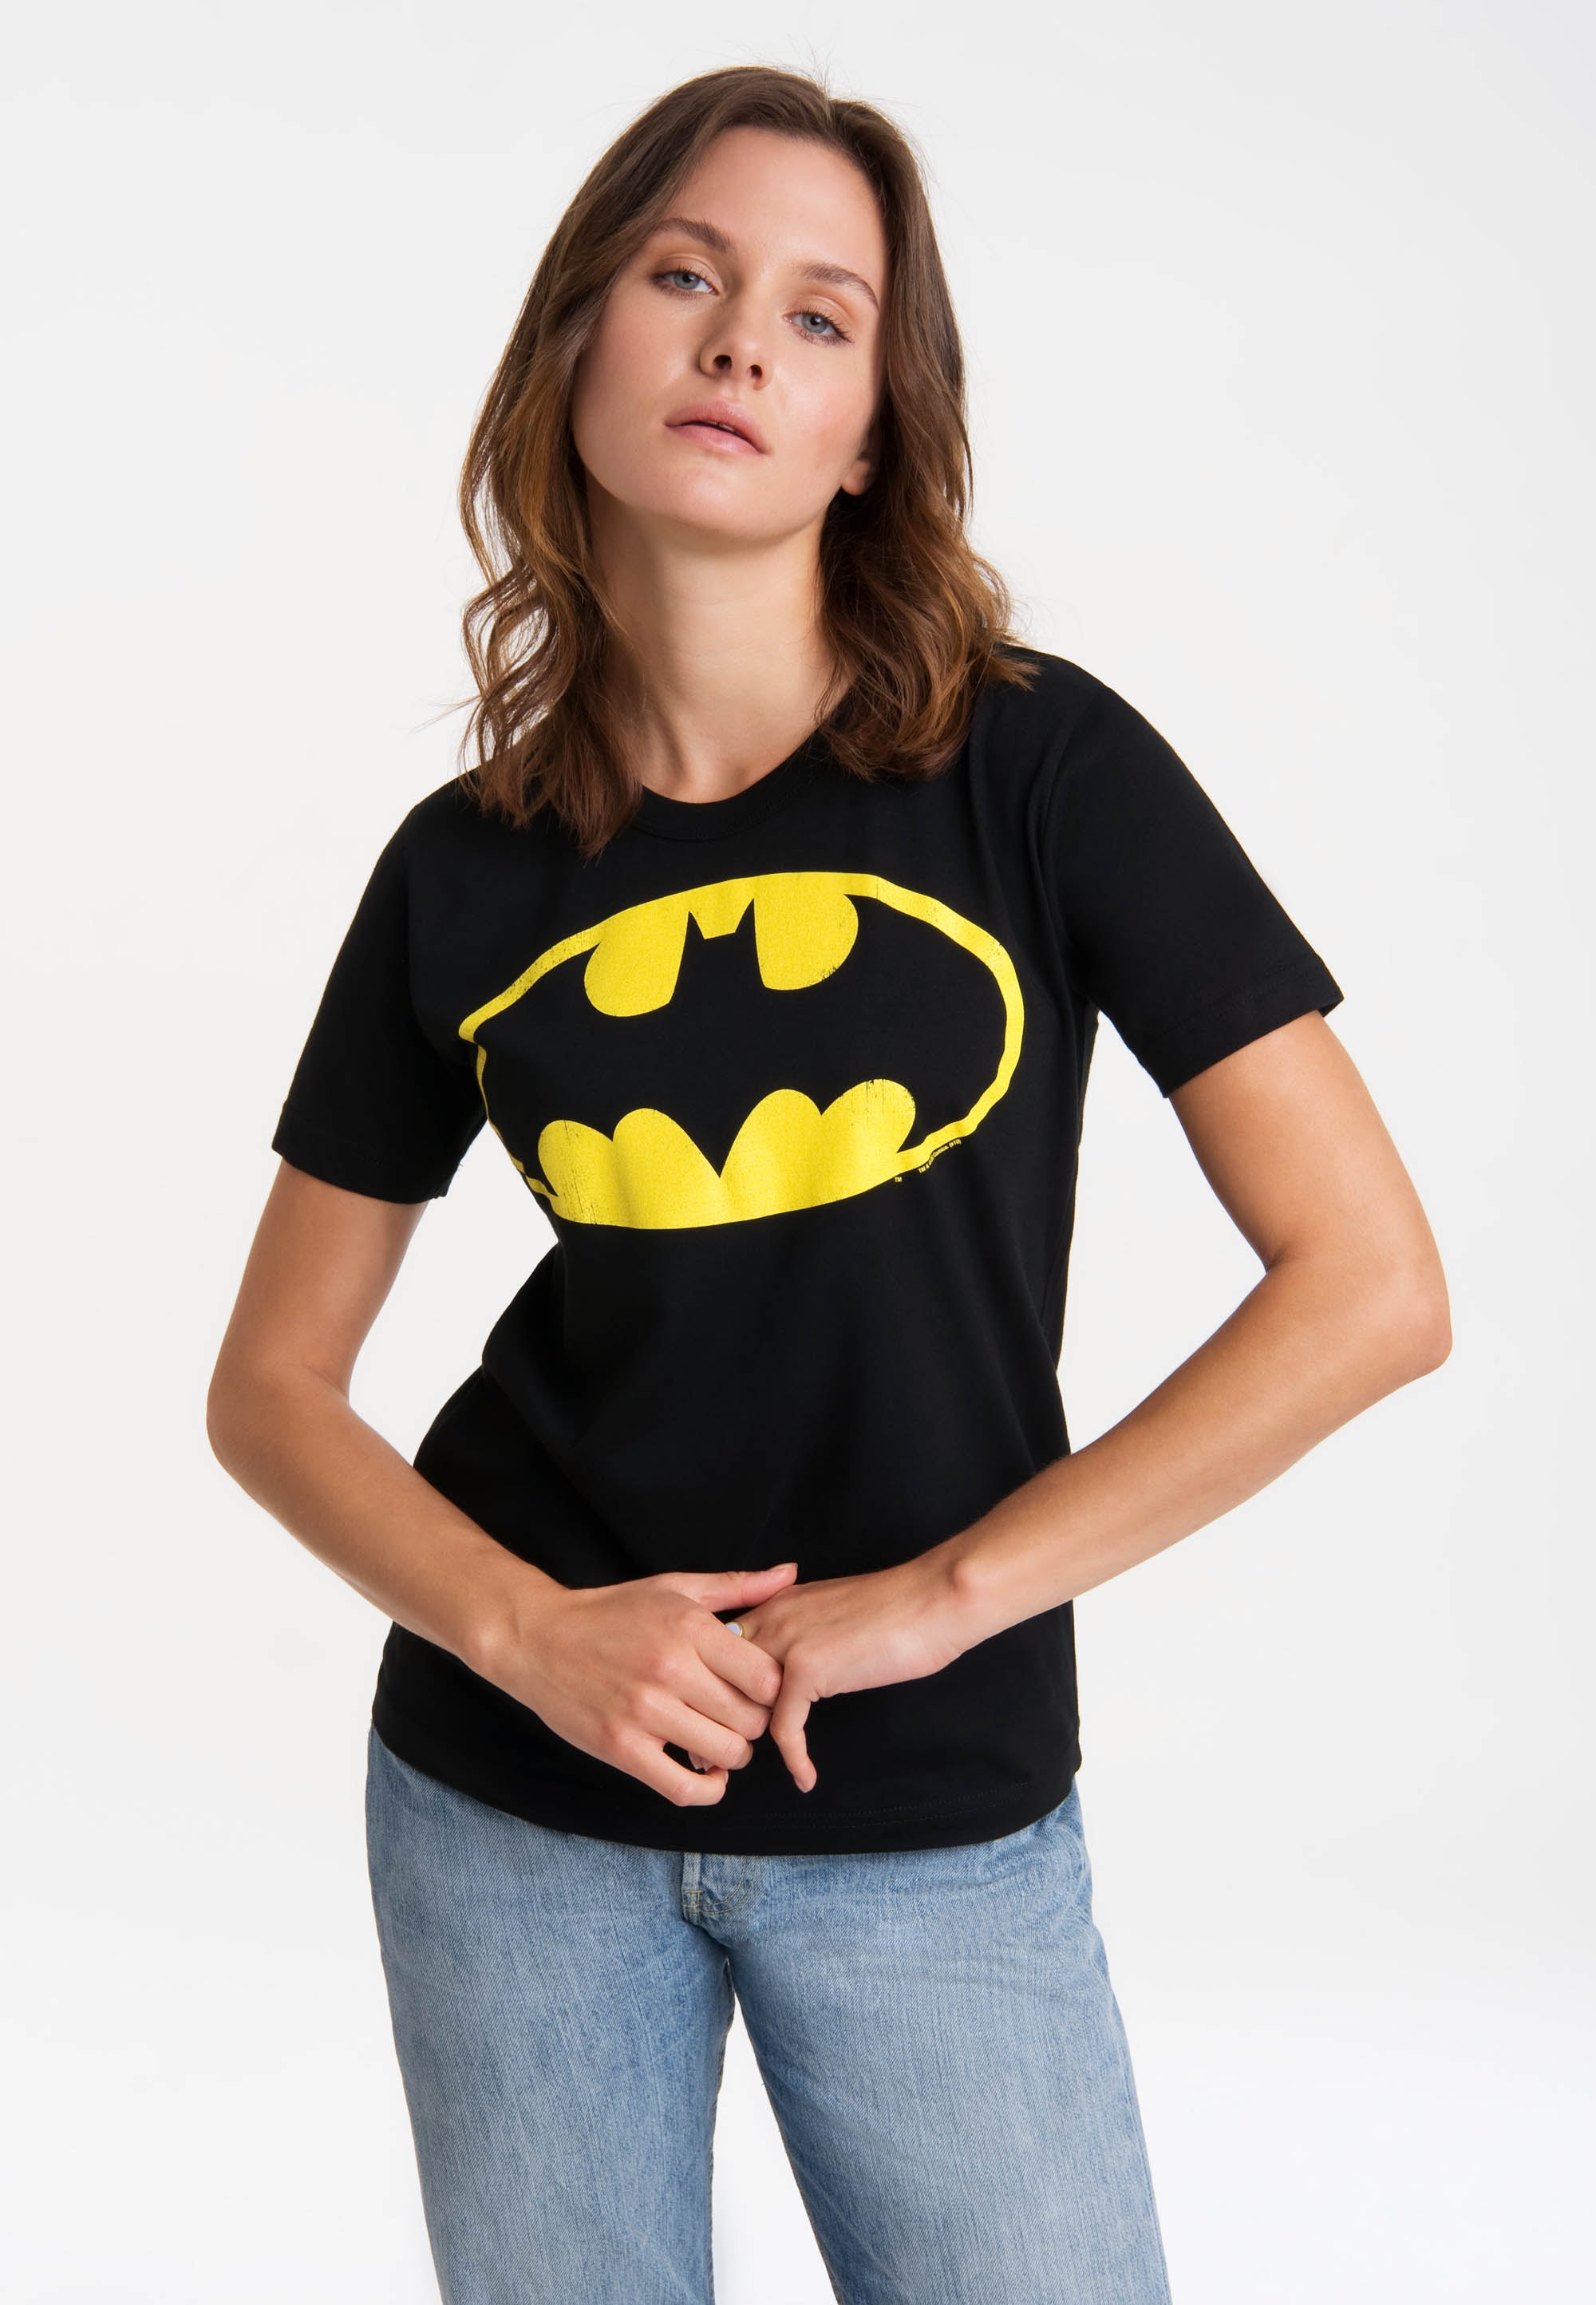 & | Merchandise Fanartikel Batman kaufen BAUR online